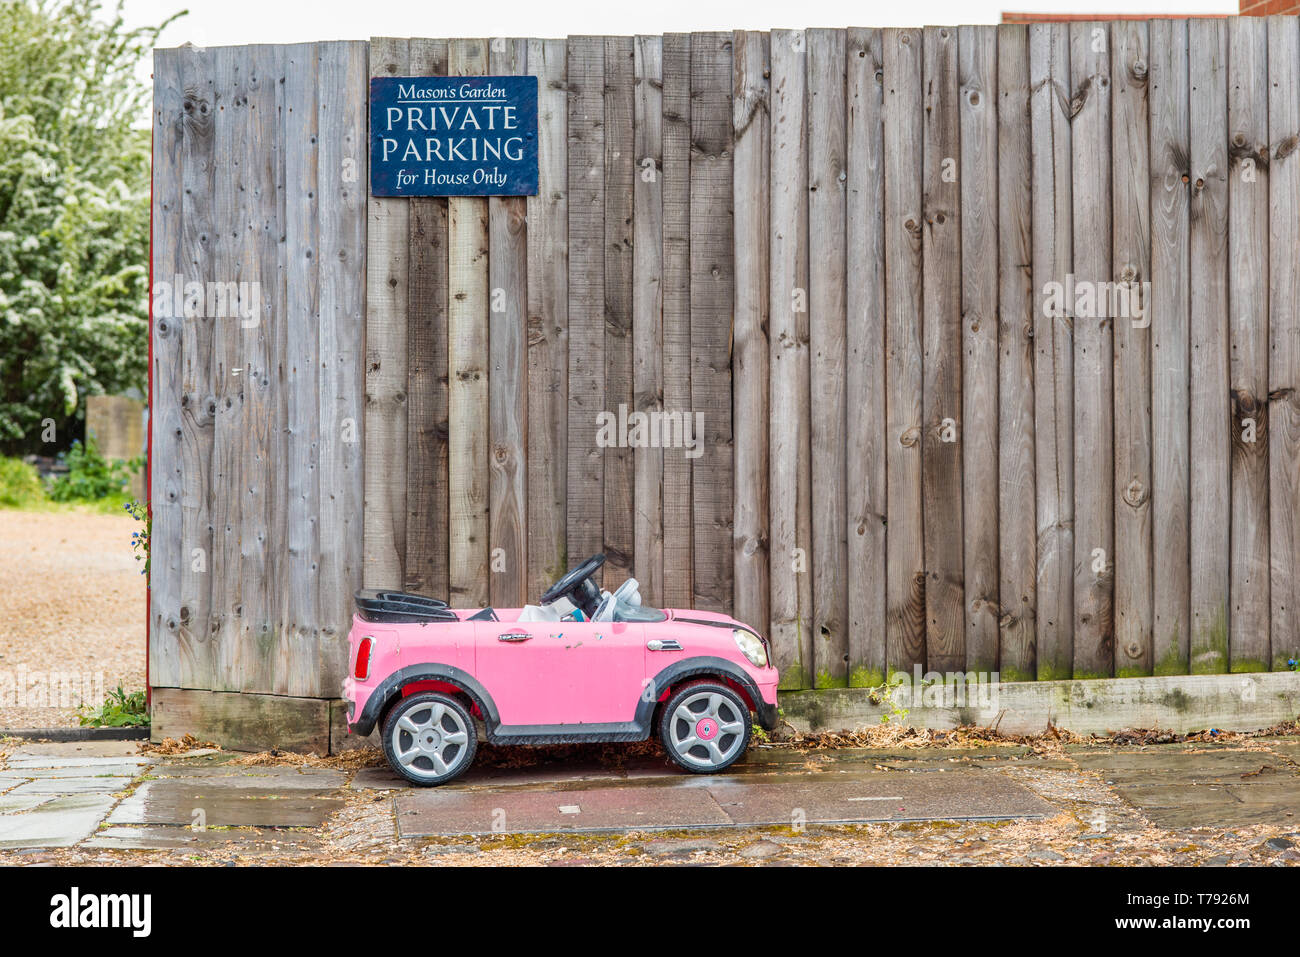 Immagine divertente di un piccolo bambino giocattolo auto parcheggiate al di sotto di parcheggio privato segno. Visto, Cambridge, Inghilterra. Foto Stock